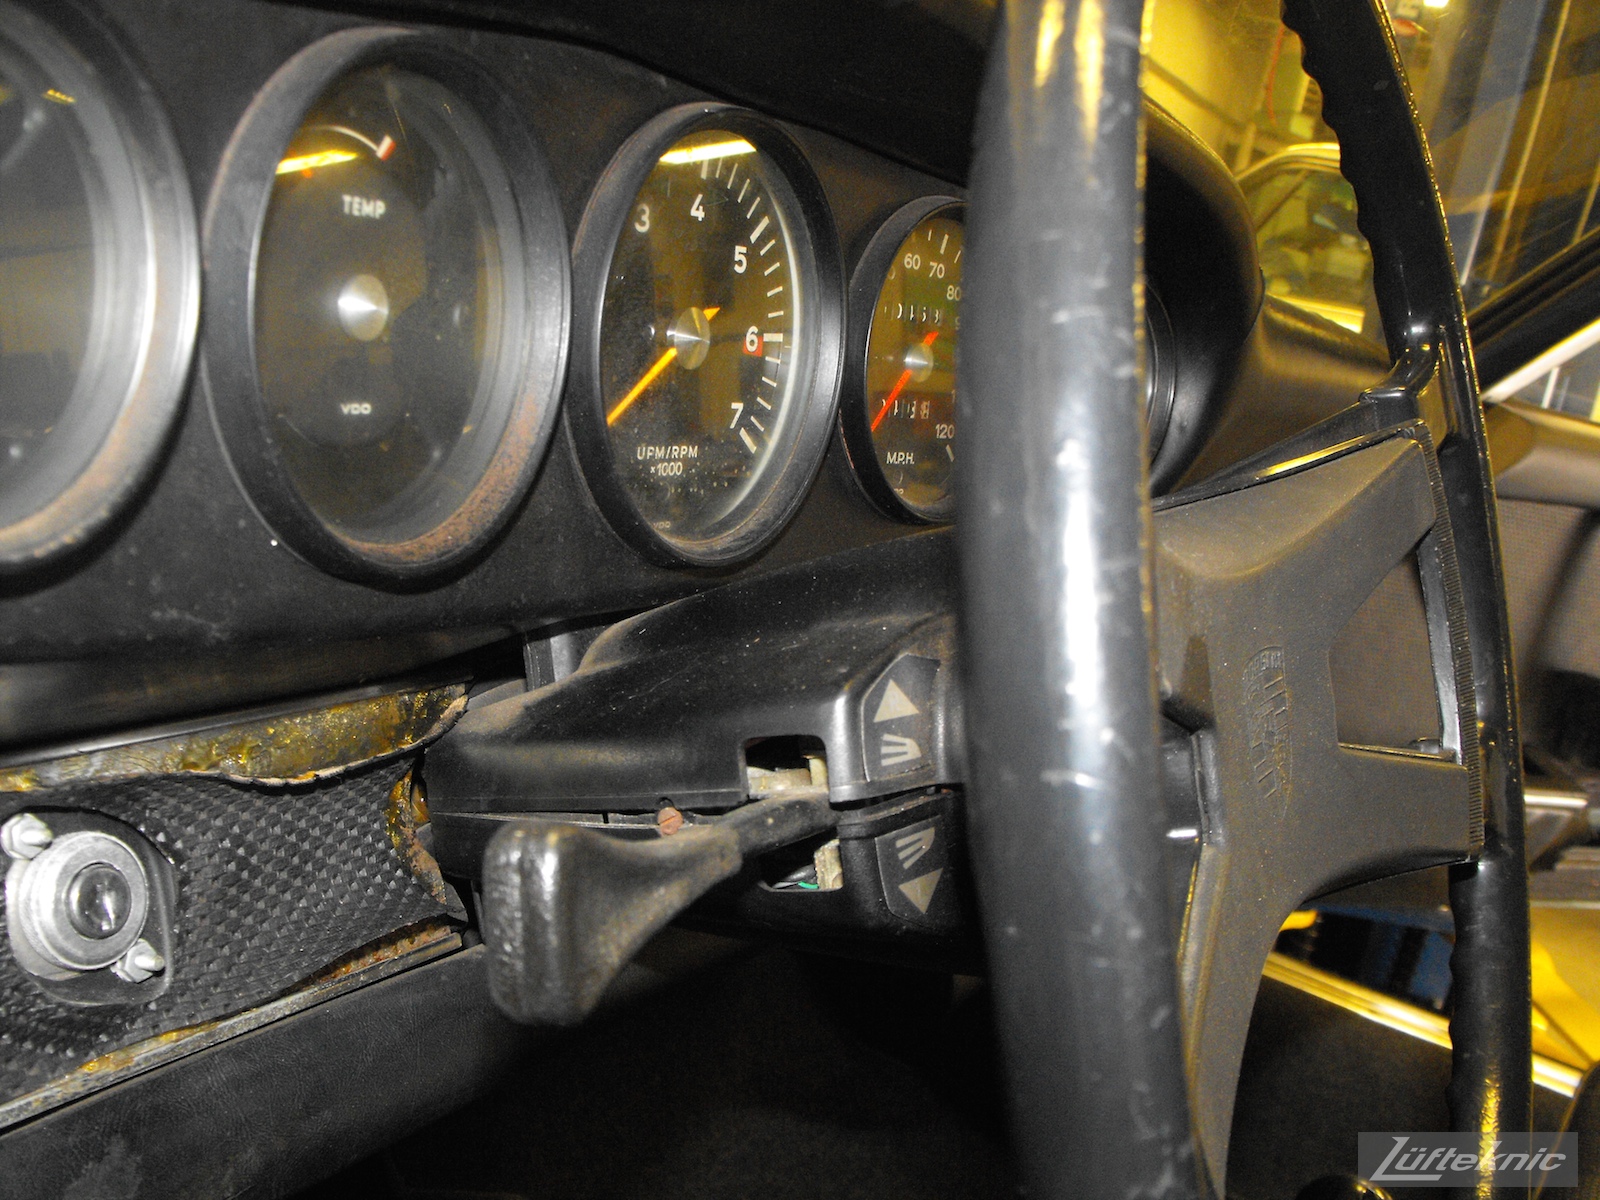 Worn dash and gauge components shown of an Irish Green Porsche 912 undergoing restoration at Lufteknic.